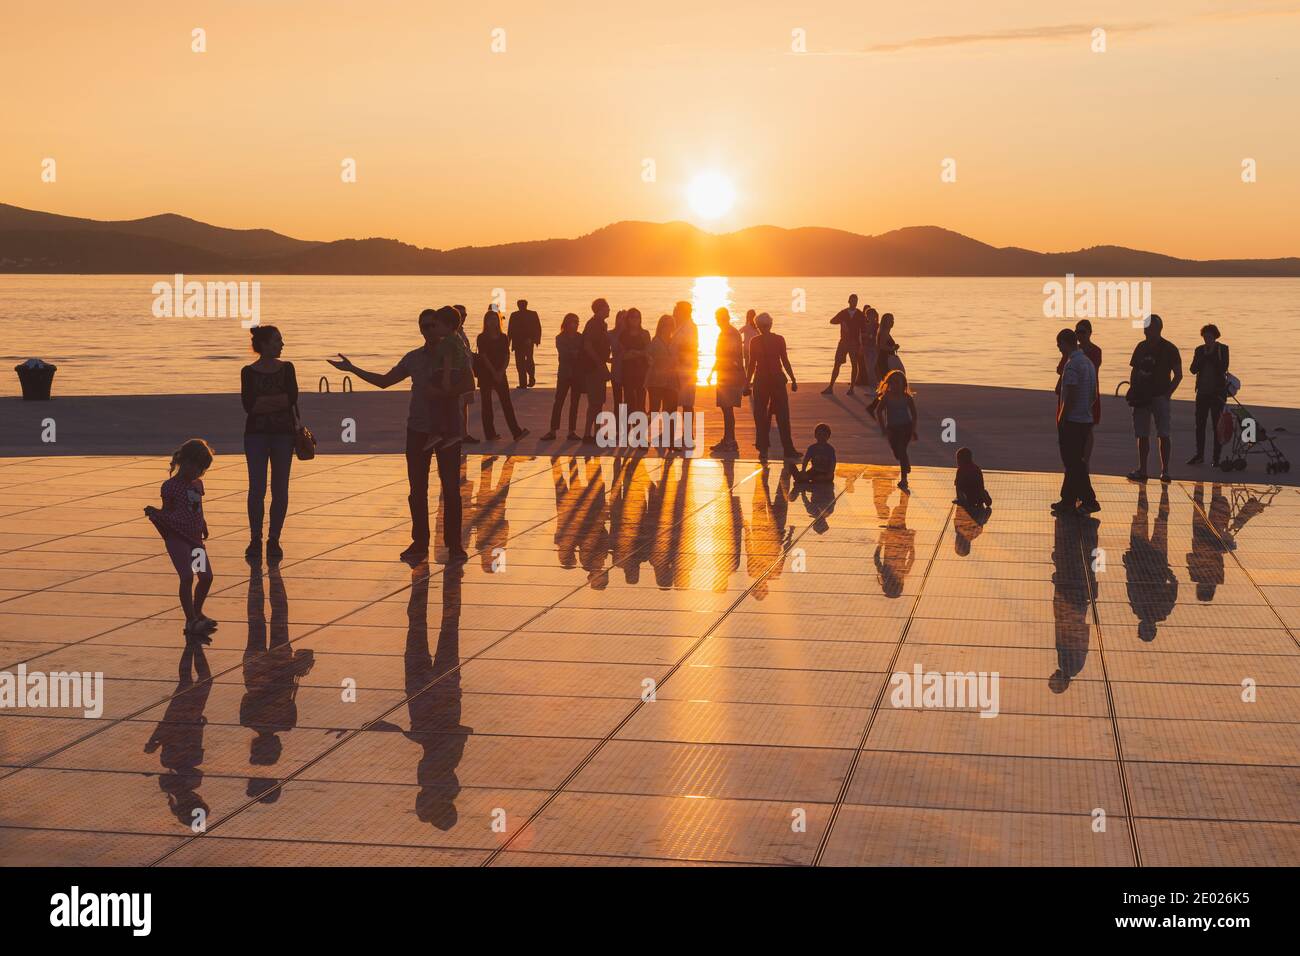 Zara, Croazia - 3 ottobre 2014: Turisti e famiglie si riuniscono per godersi il tramonto al Monumento al Sole, una moderna installazione solare progettata da Foto Stock